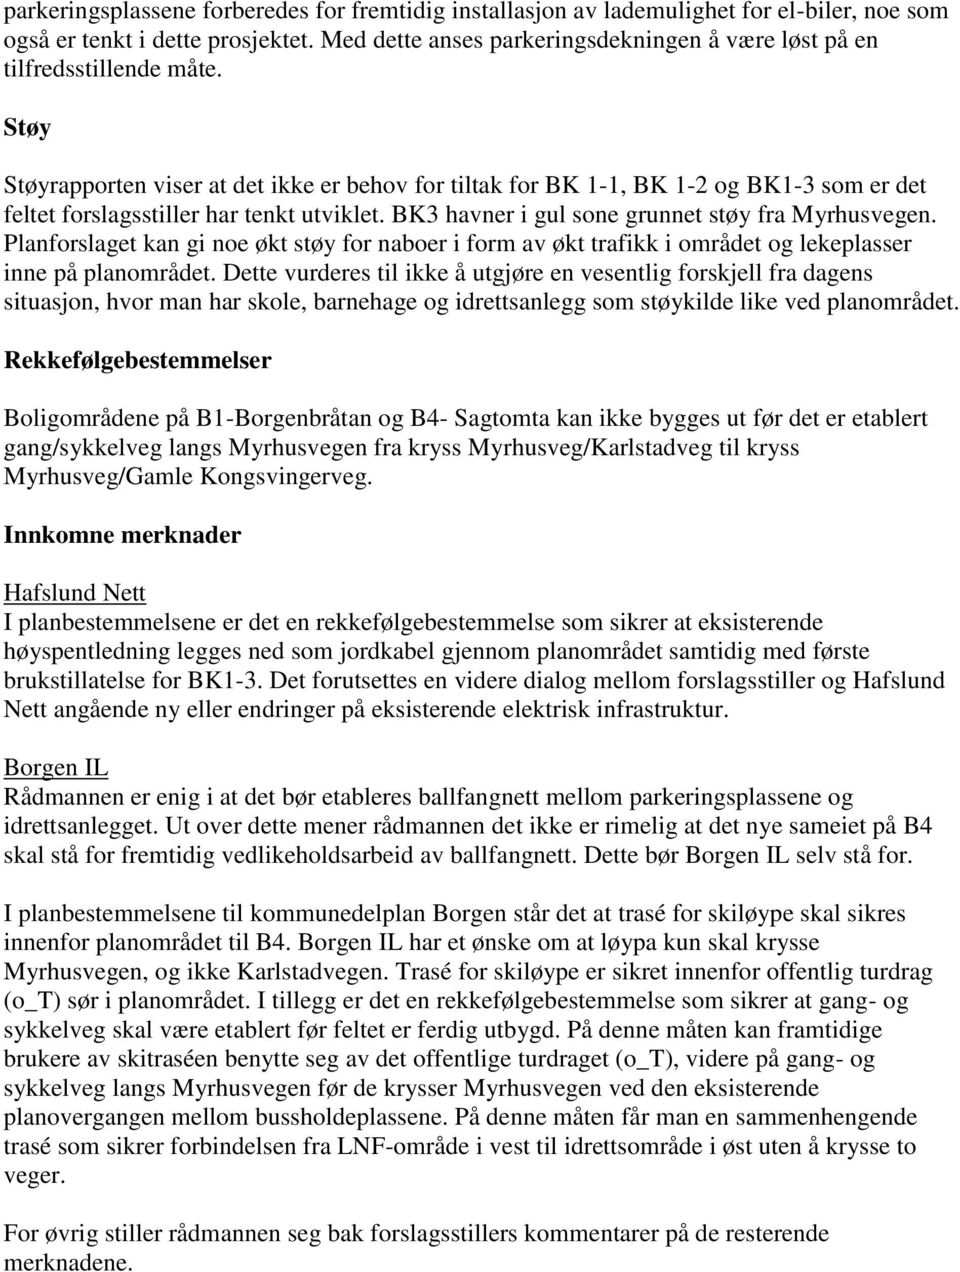 Støy Støyrapporten viser at det ikke er behov for tiltak for BK 1-1, BK 1-2 og BK1-3 som er det feltet forslagsstiller har tenkt utviklet. BK3 havner i gul sone grunnet støy fra Myrhusvegen.